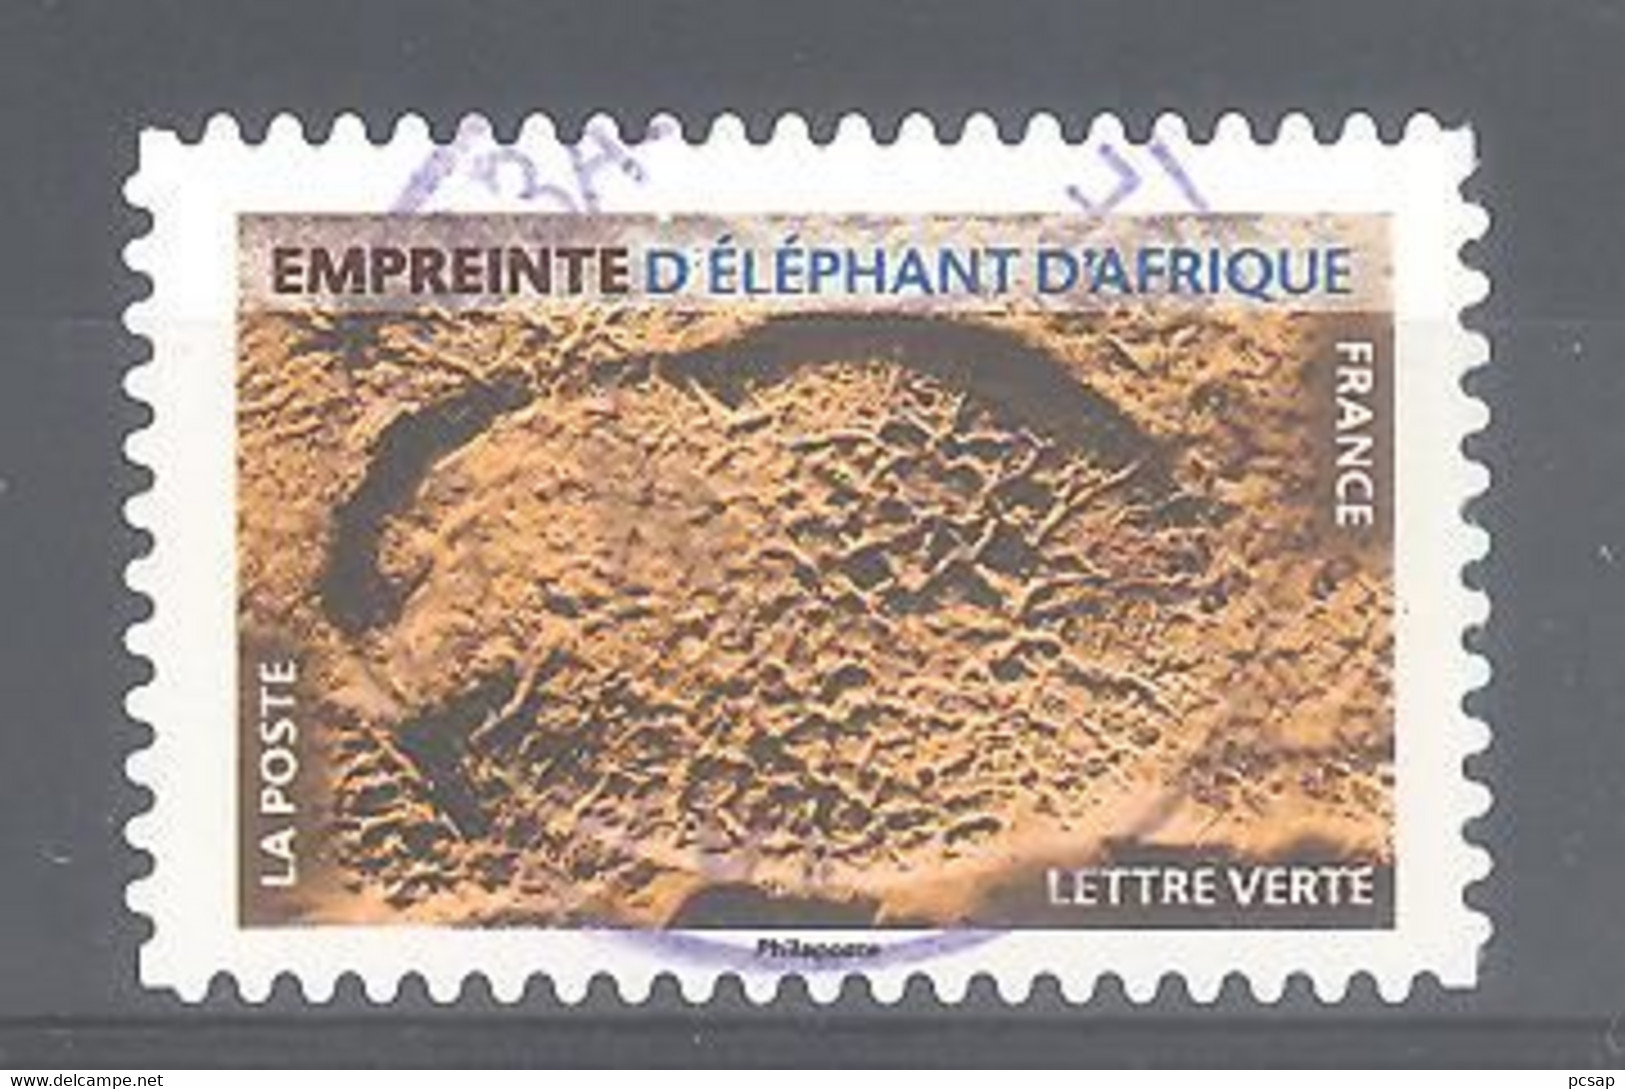 France Autoadhésif Oblitéré N°1964 (Empreinte D'éléphant D'Afrique) (cachet Rond) - Oblitérés